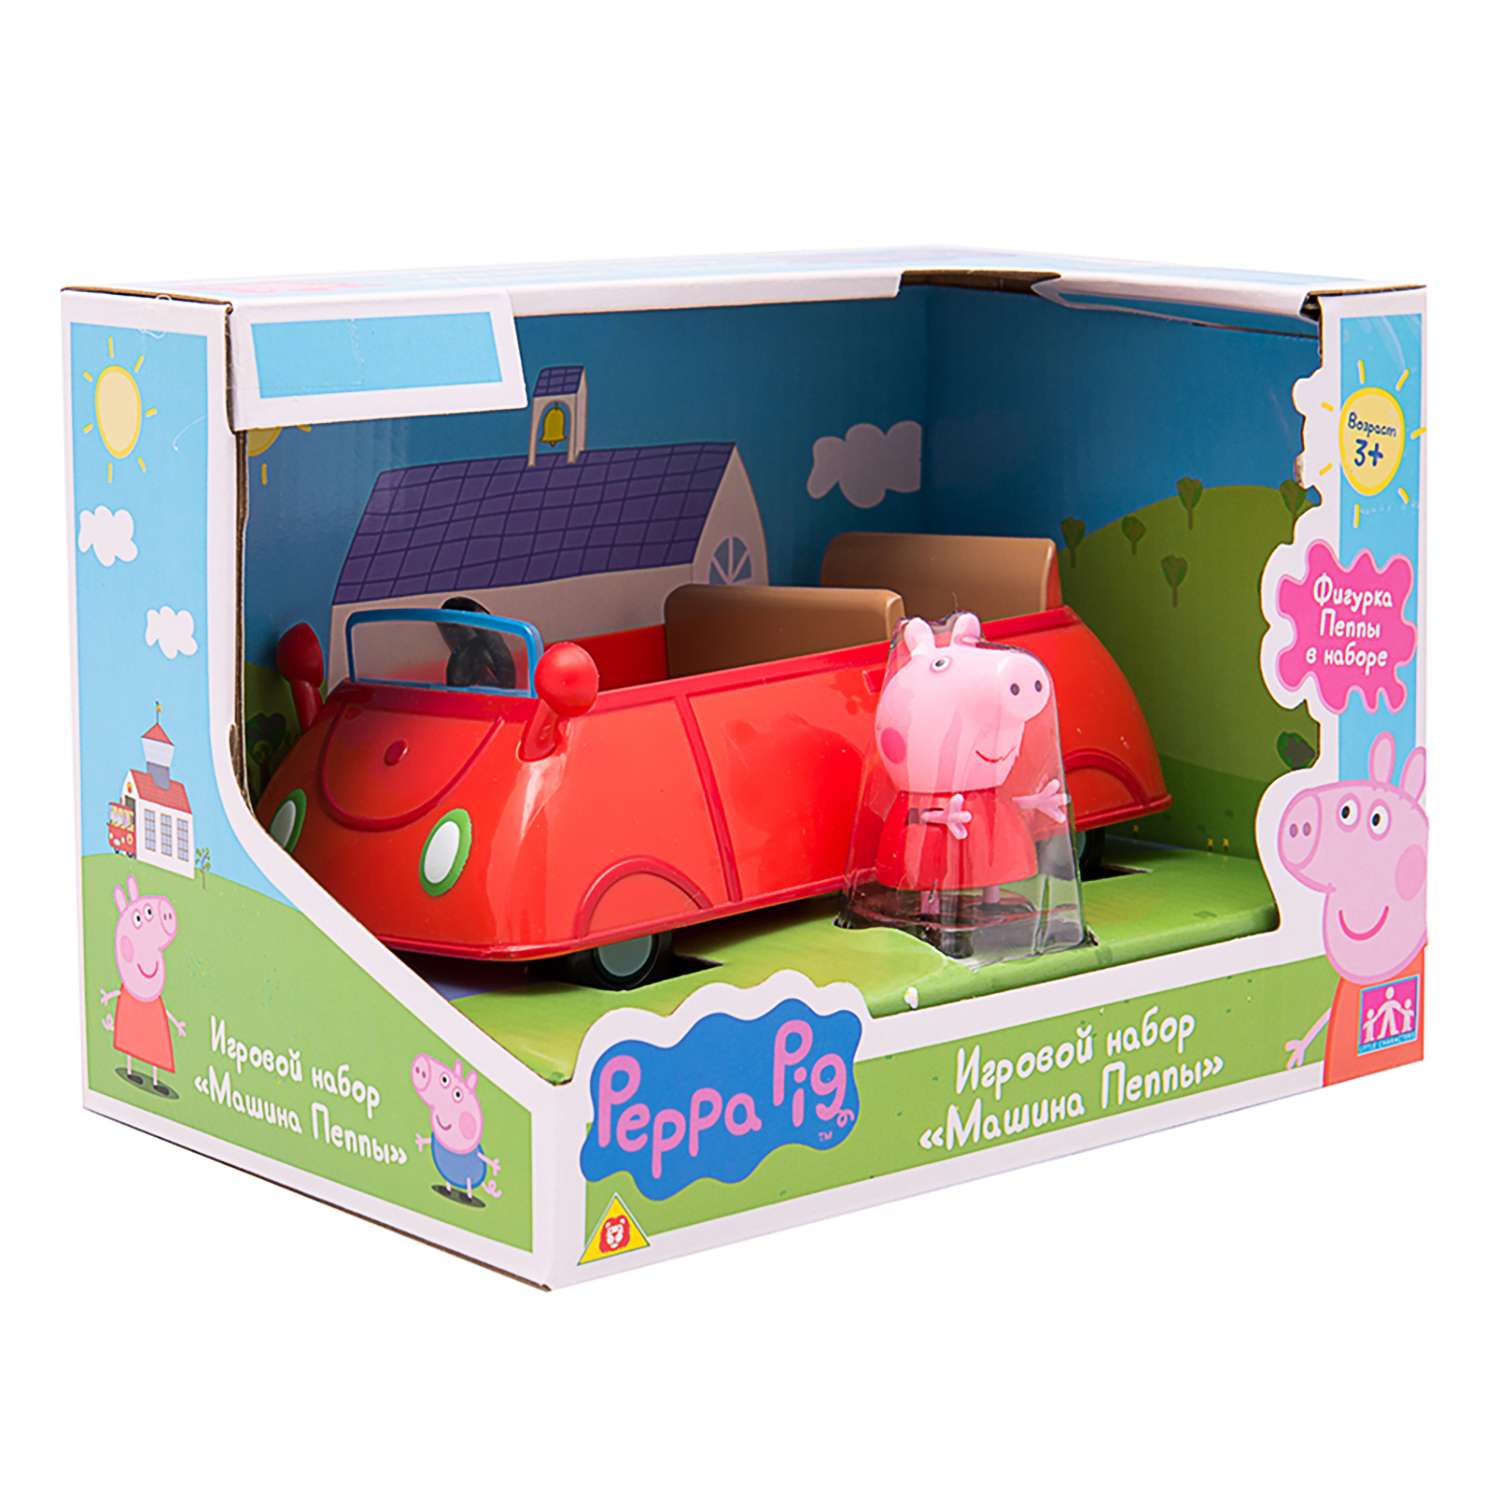 Игровой набор Свинка Пеппа машина Пеппы (фигурка Пеппы, машинка) - фото 7